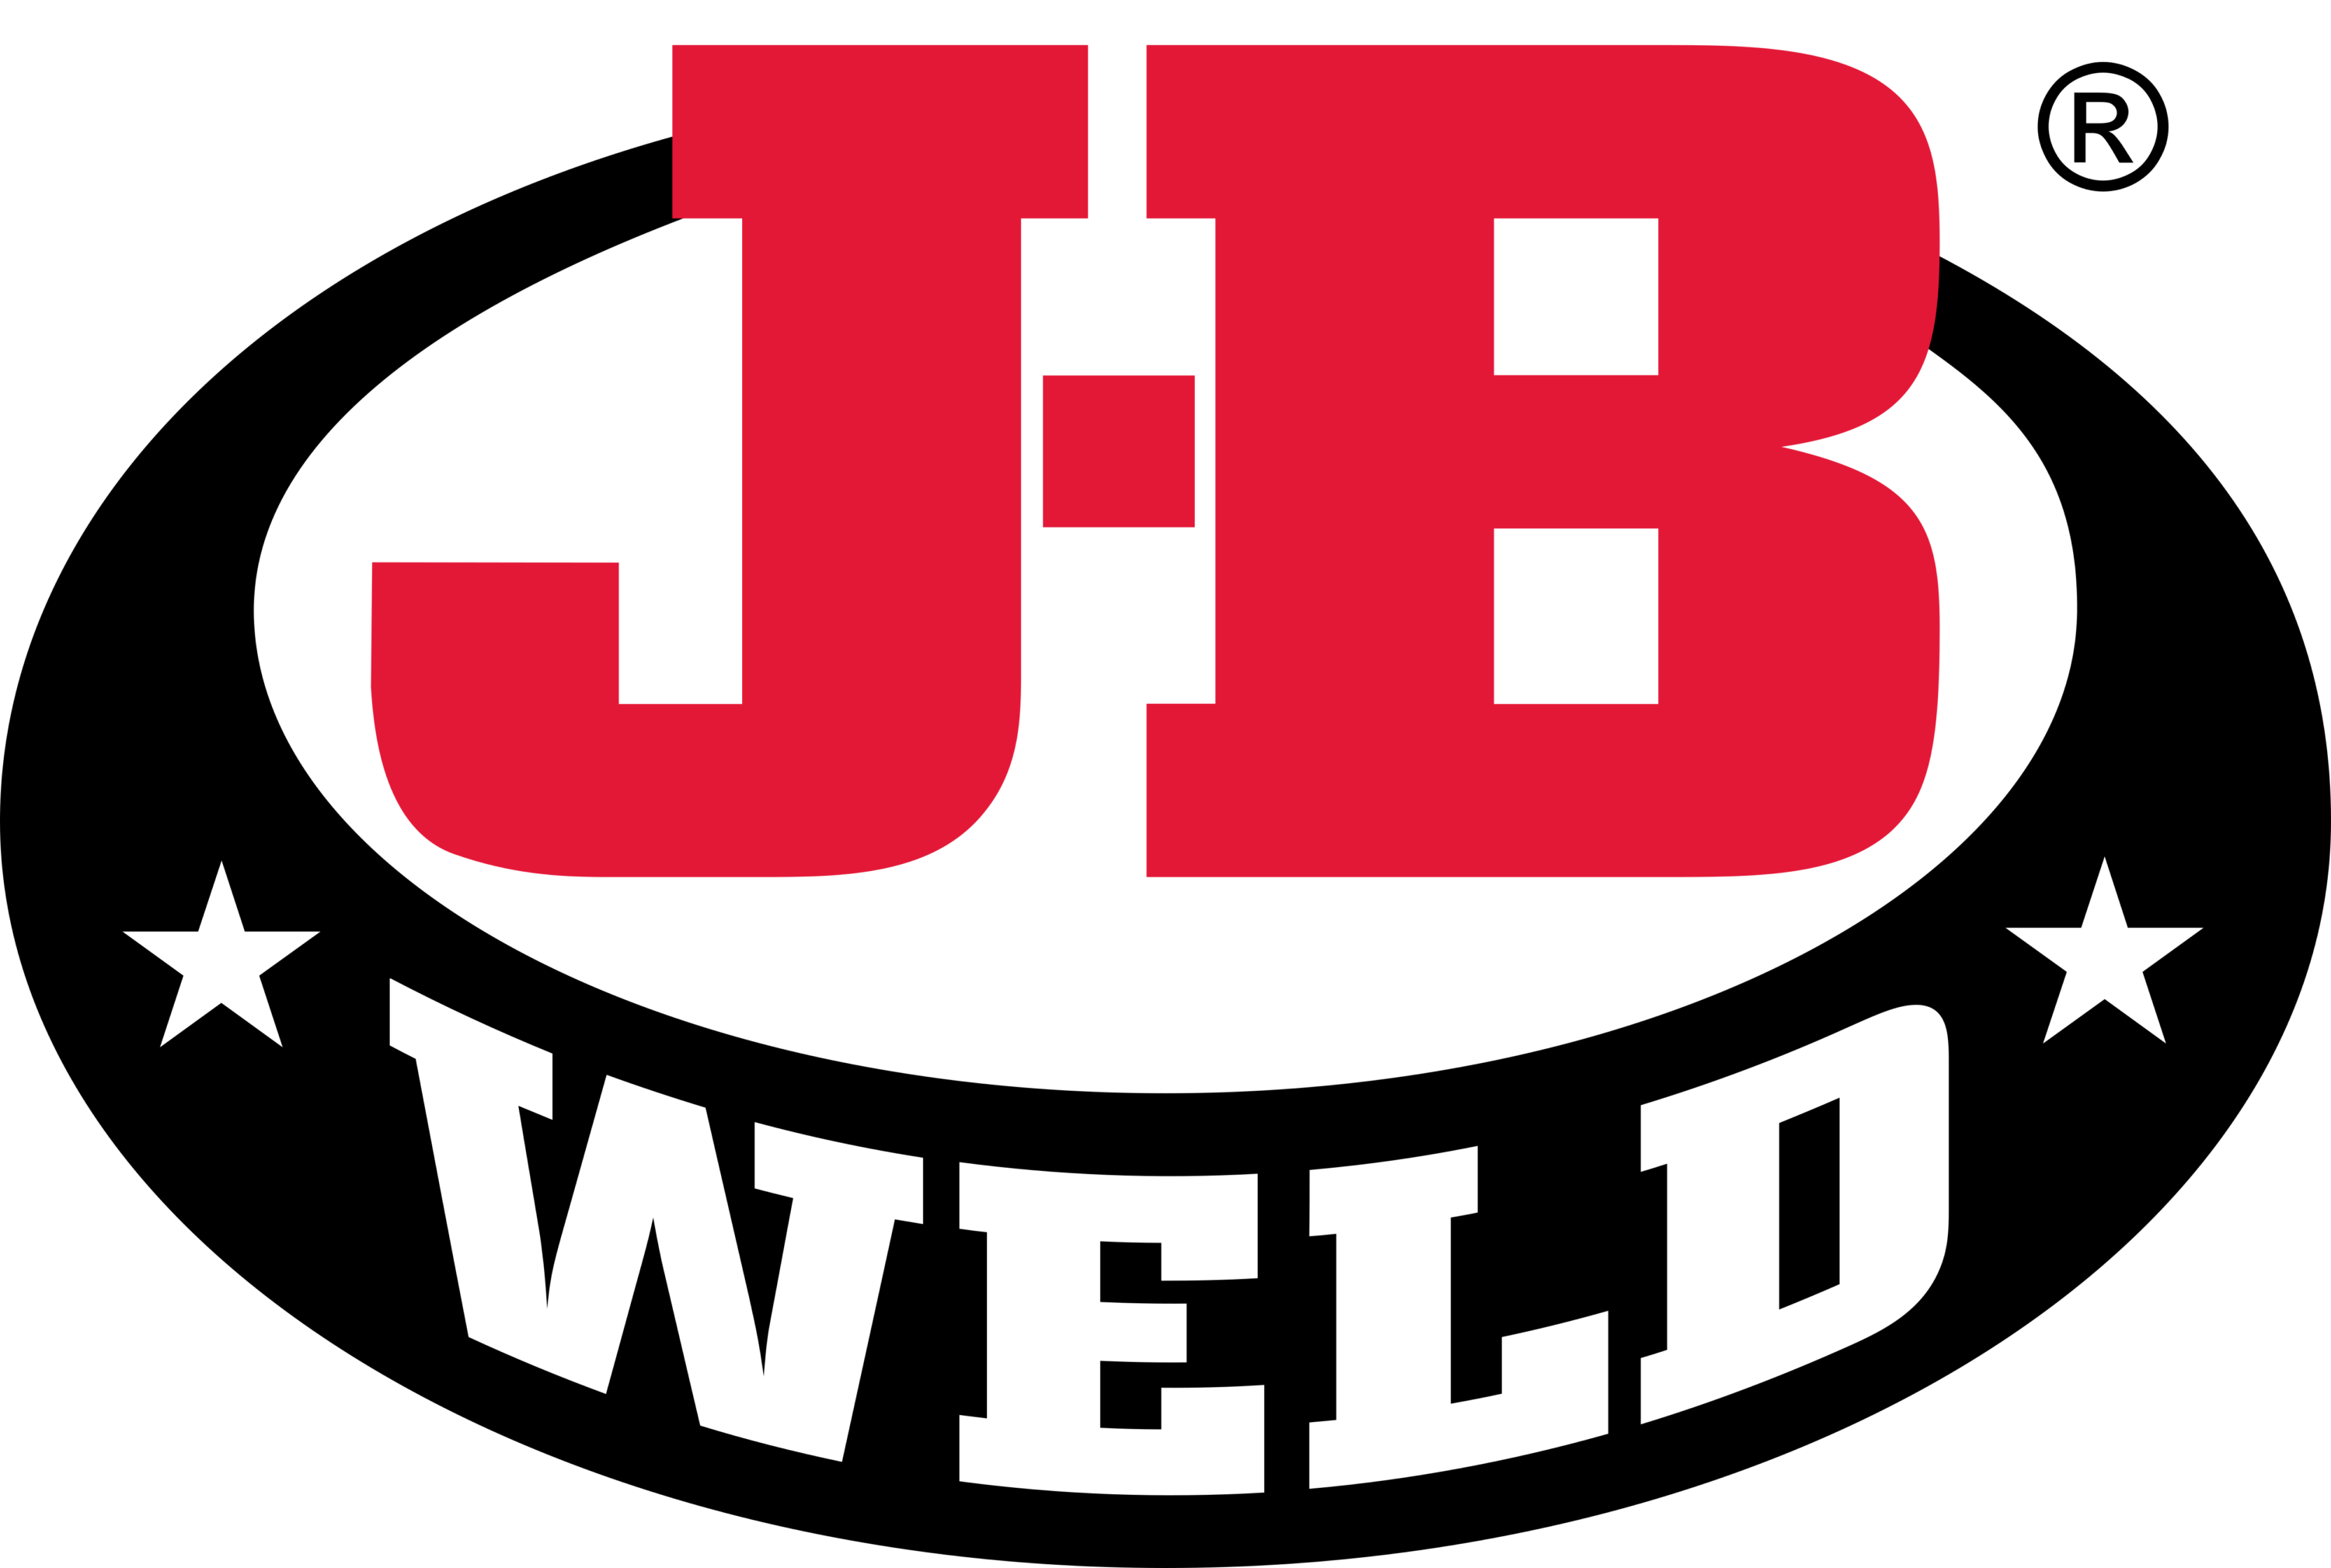 J B Weld Logo